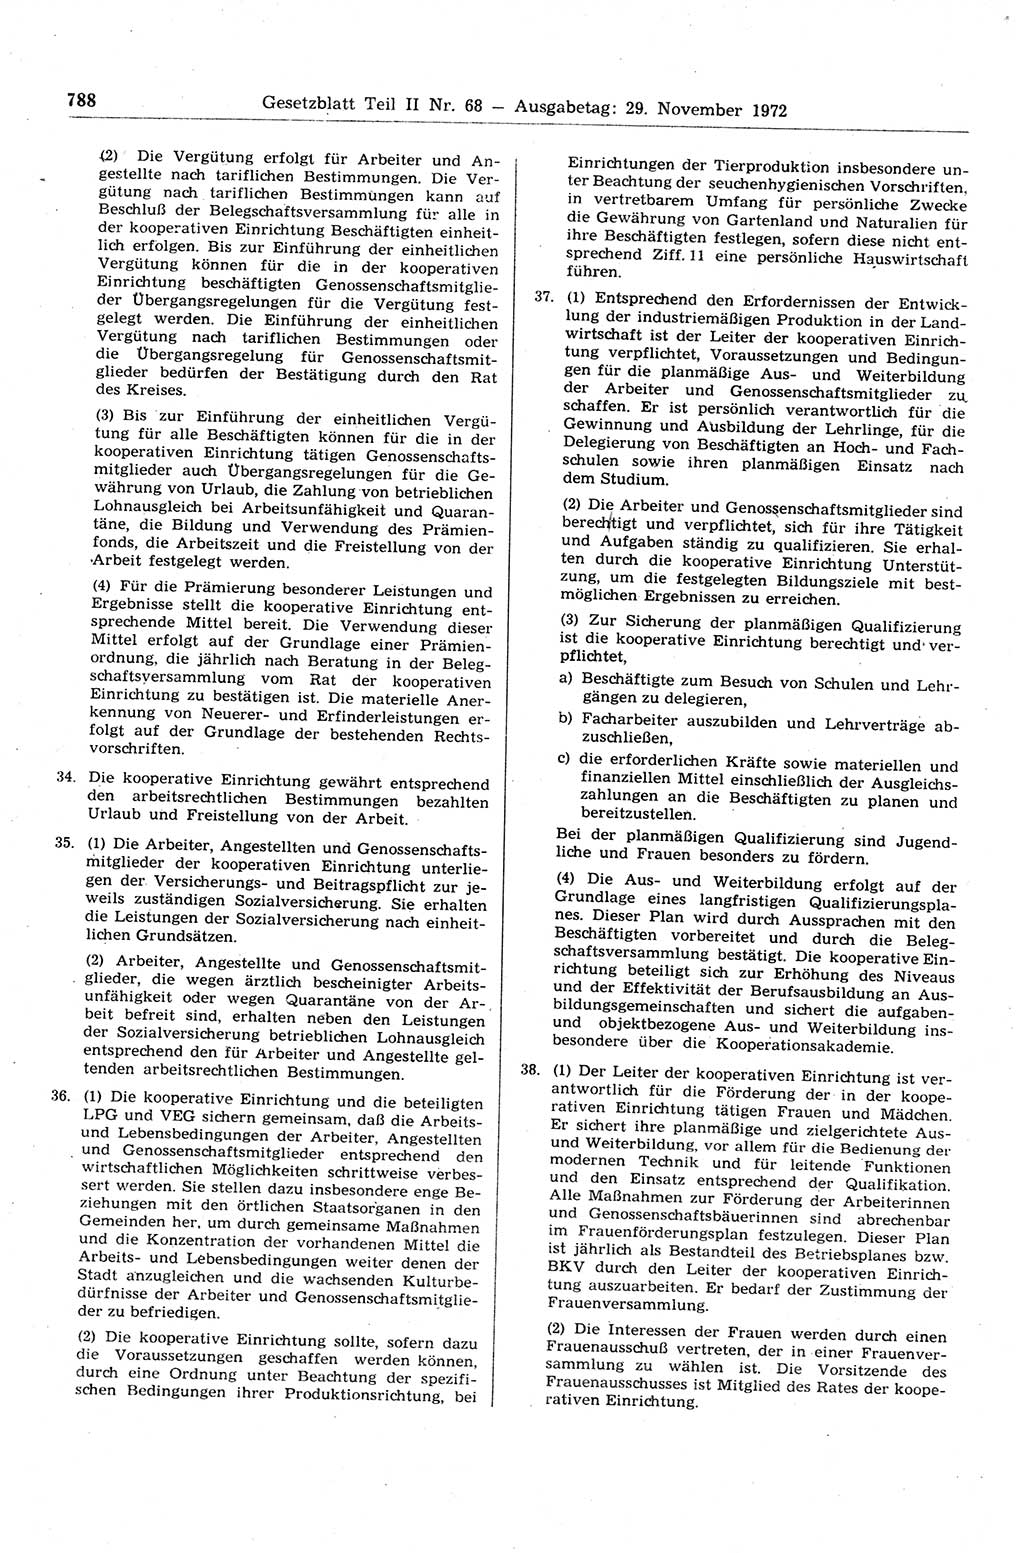 Gesetzblatt (GBl.) der Deutschen Demokratischen Republik (DDR) Teil ⅠⅠ 1972, Seite 788 (GBl. DDR ⅠⅠ 1972, S. 788)